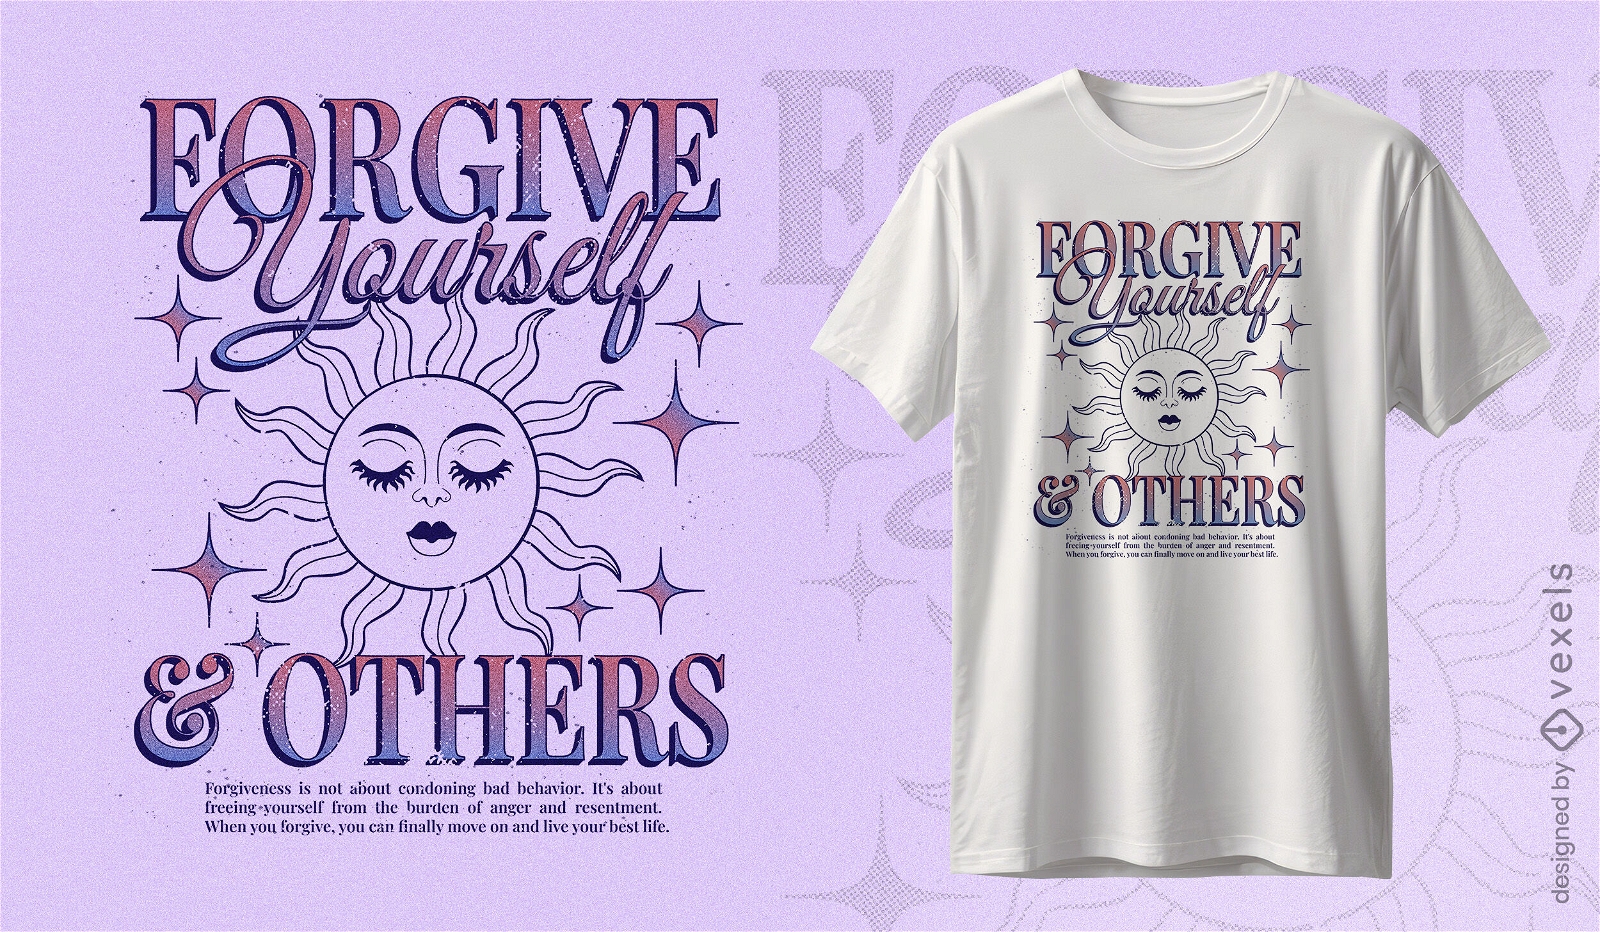 Celestial forgiveness quote t-shirt design